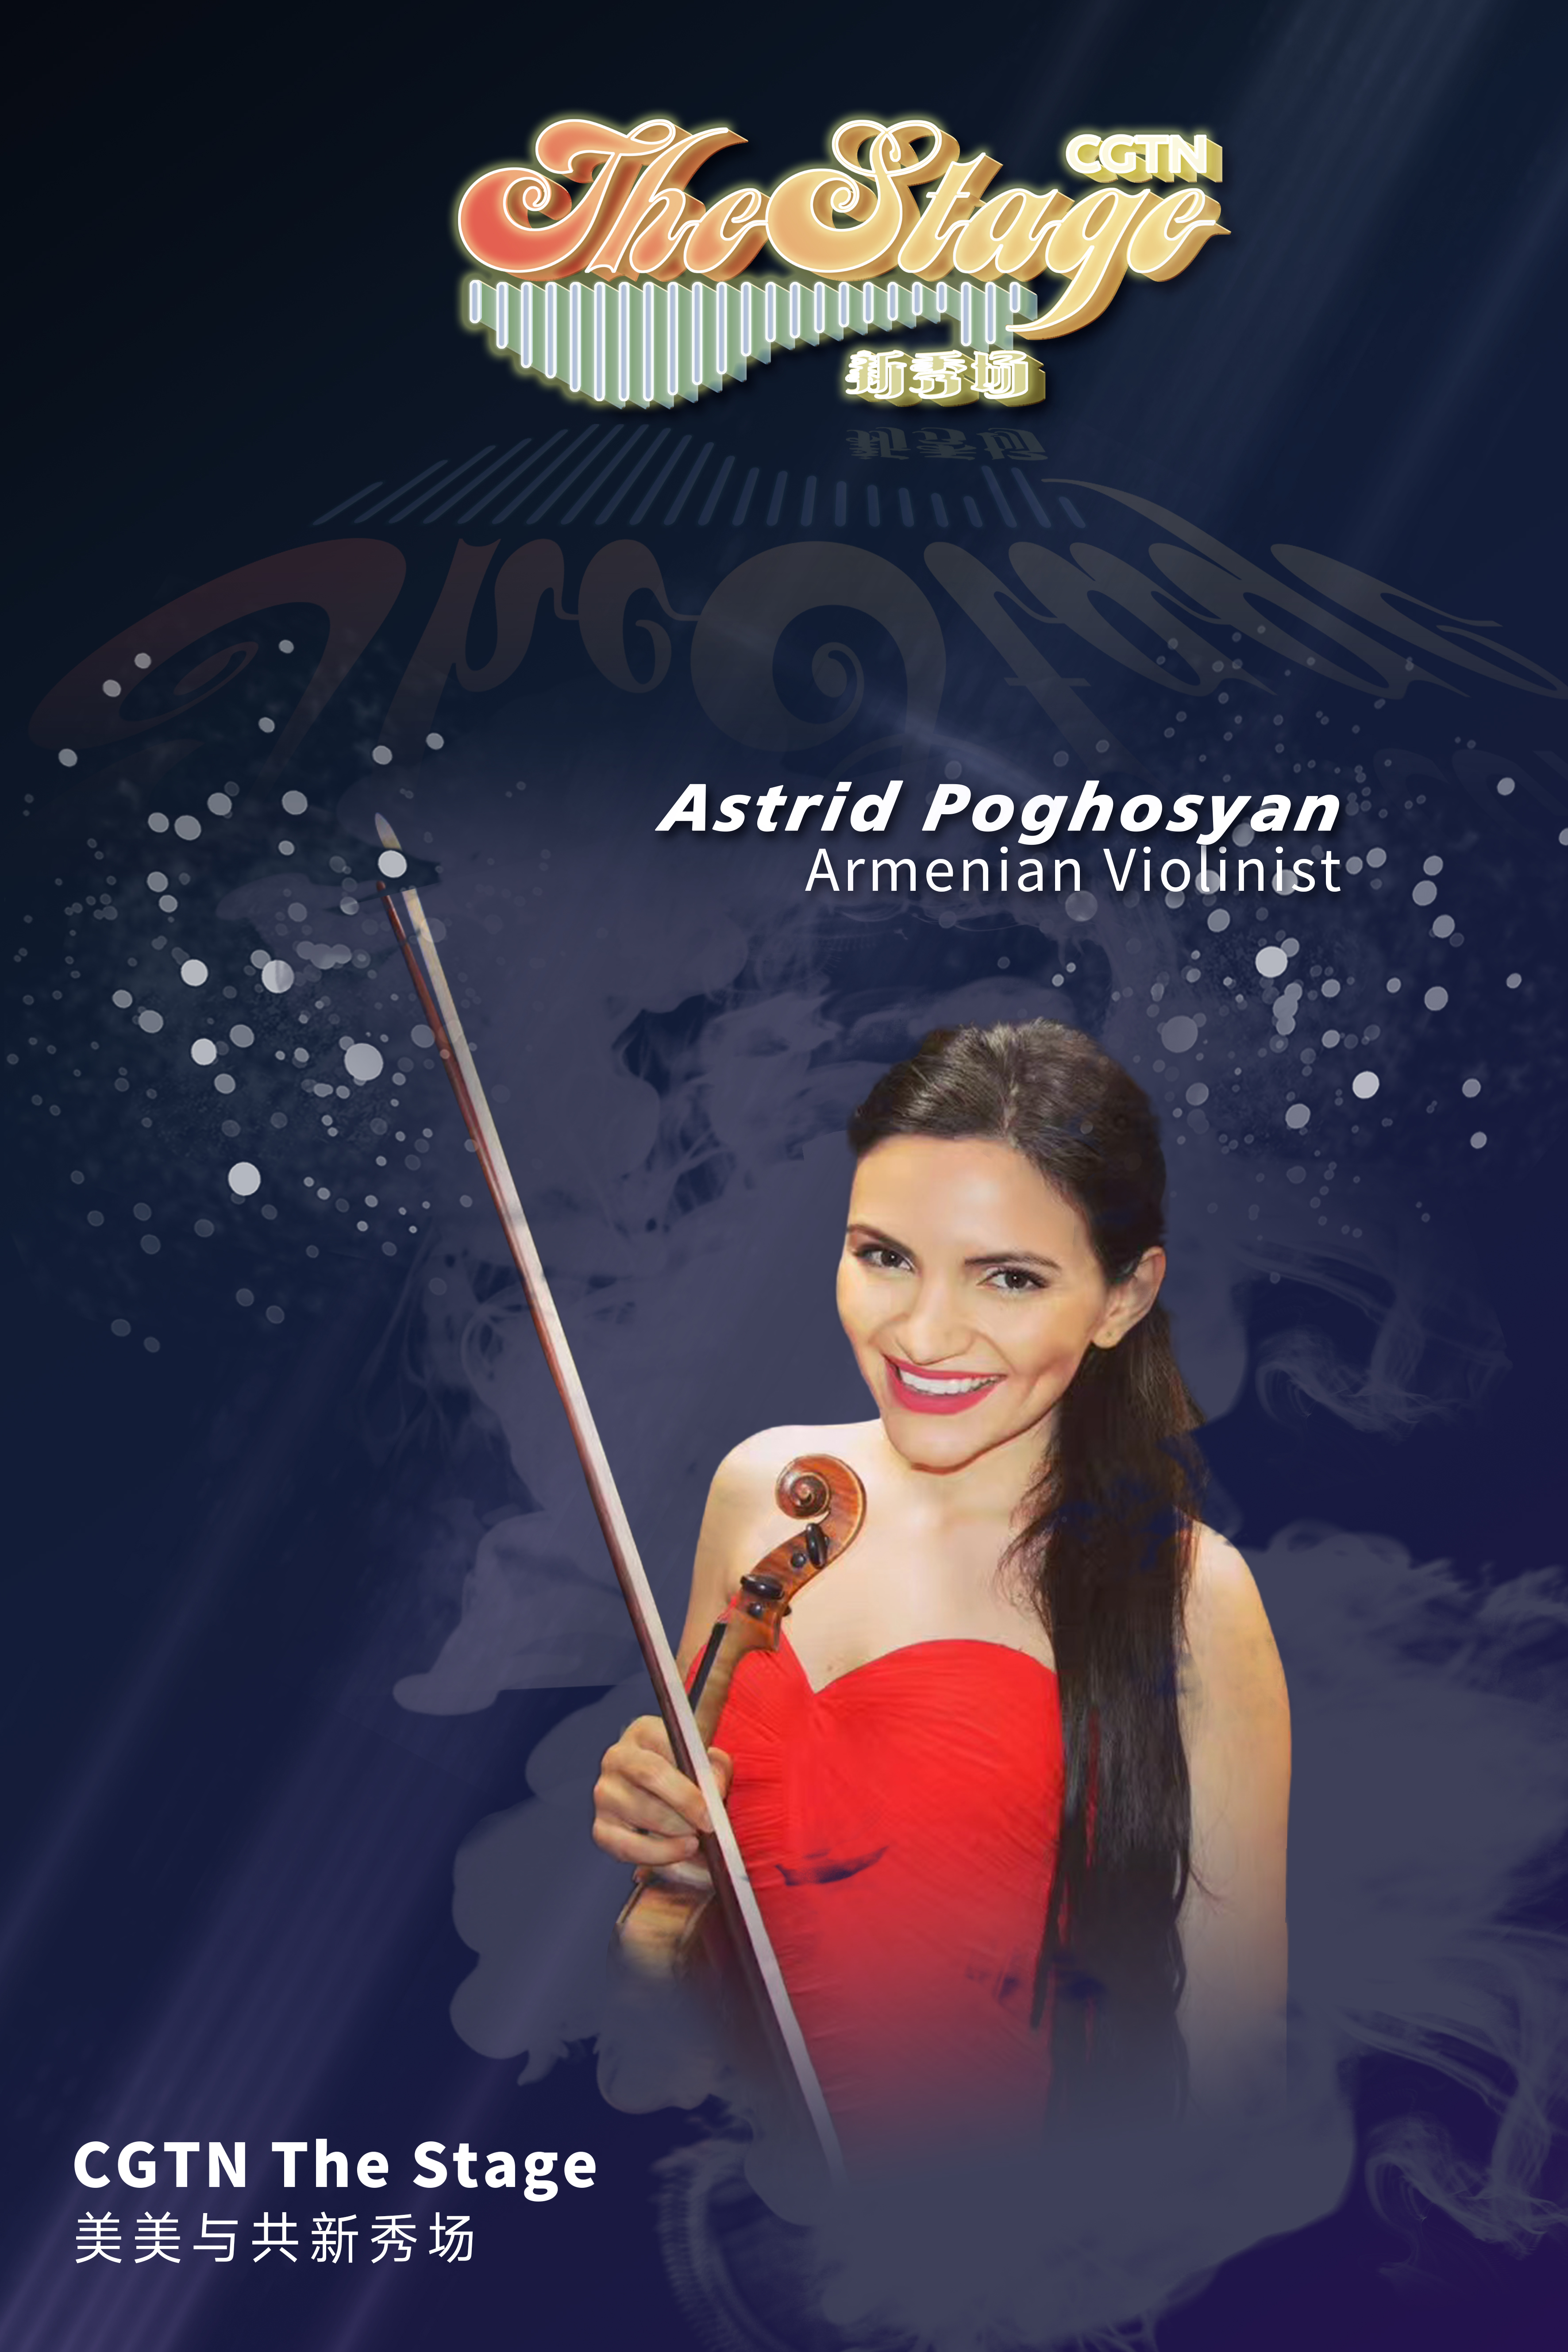 Armenian violinist Astrid Poghosyan